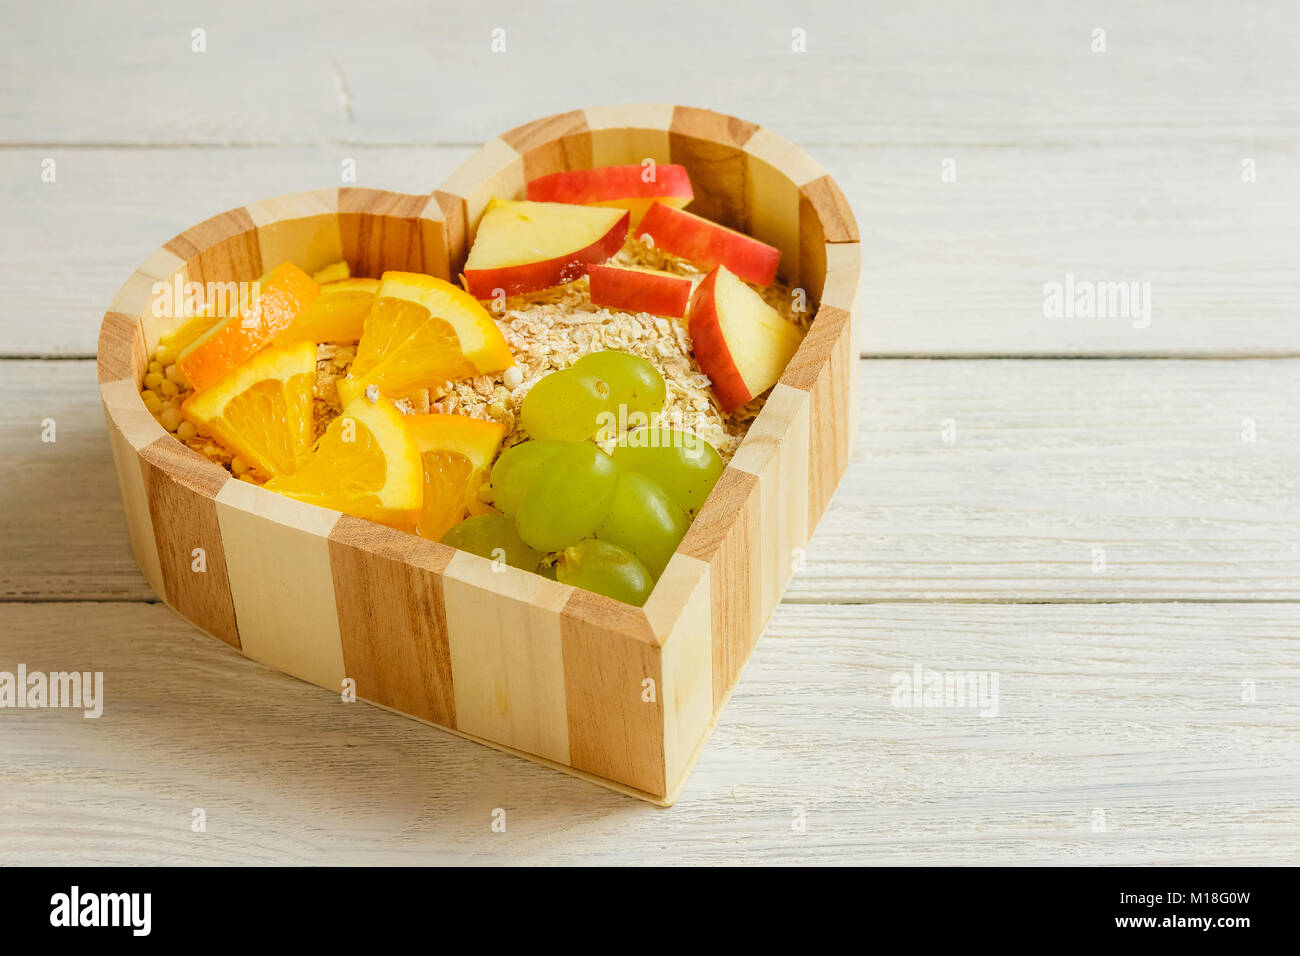 Fruits du cœur sur la base en bois. Concept d'aliments sains. Banque D'Images